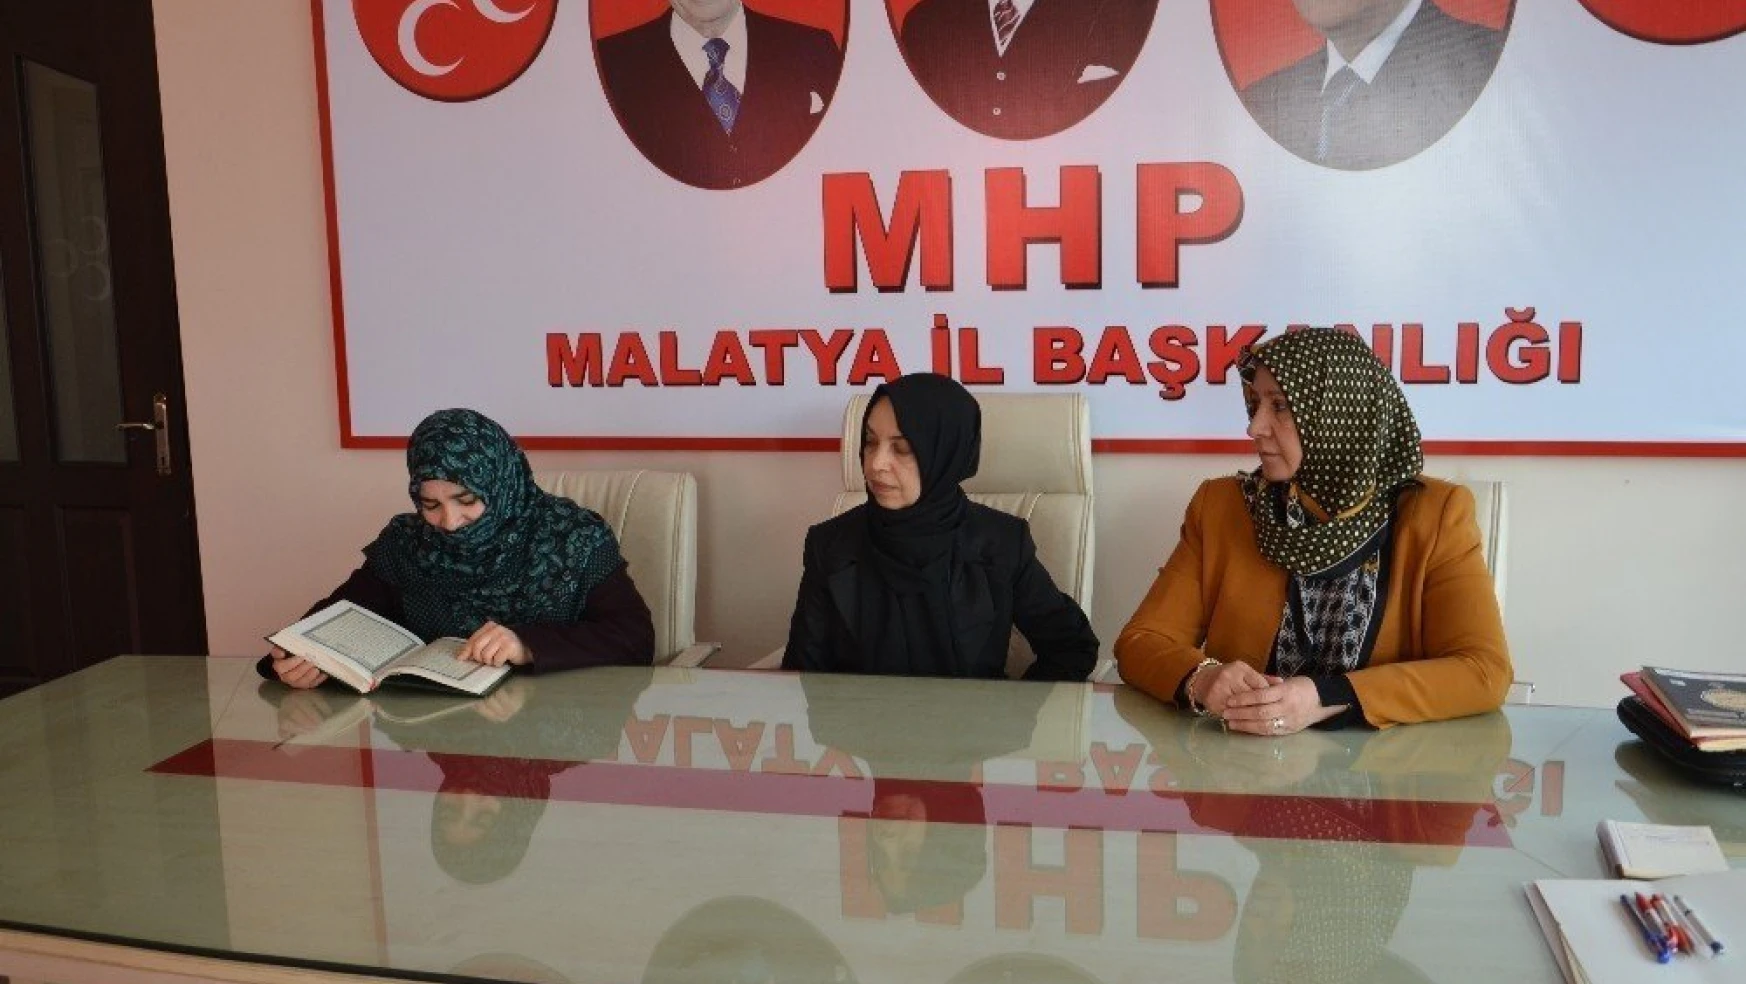 MHP'li kadınlar şehitler için mevlit okuttu
